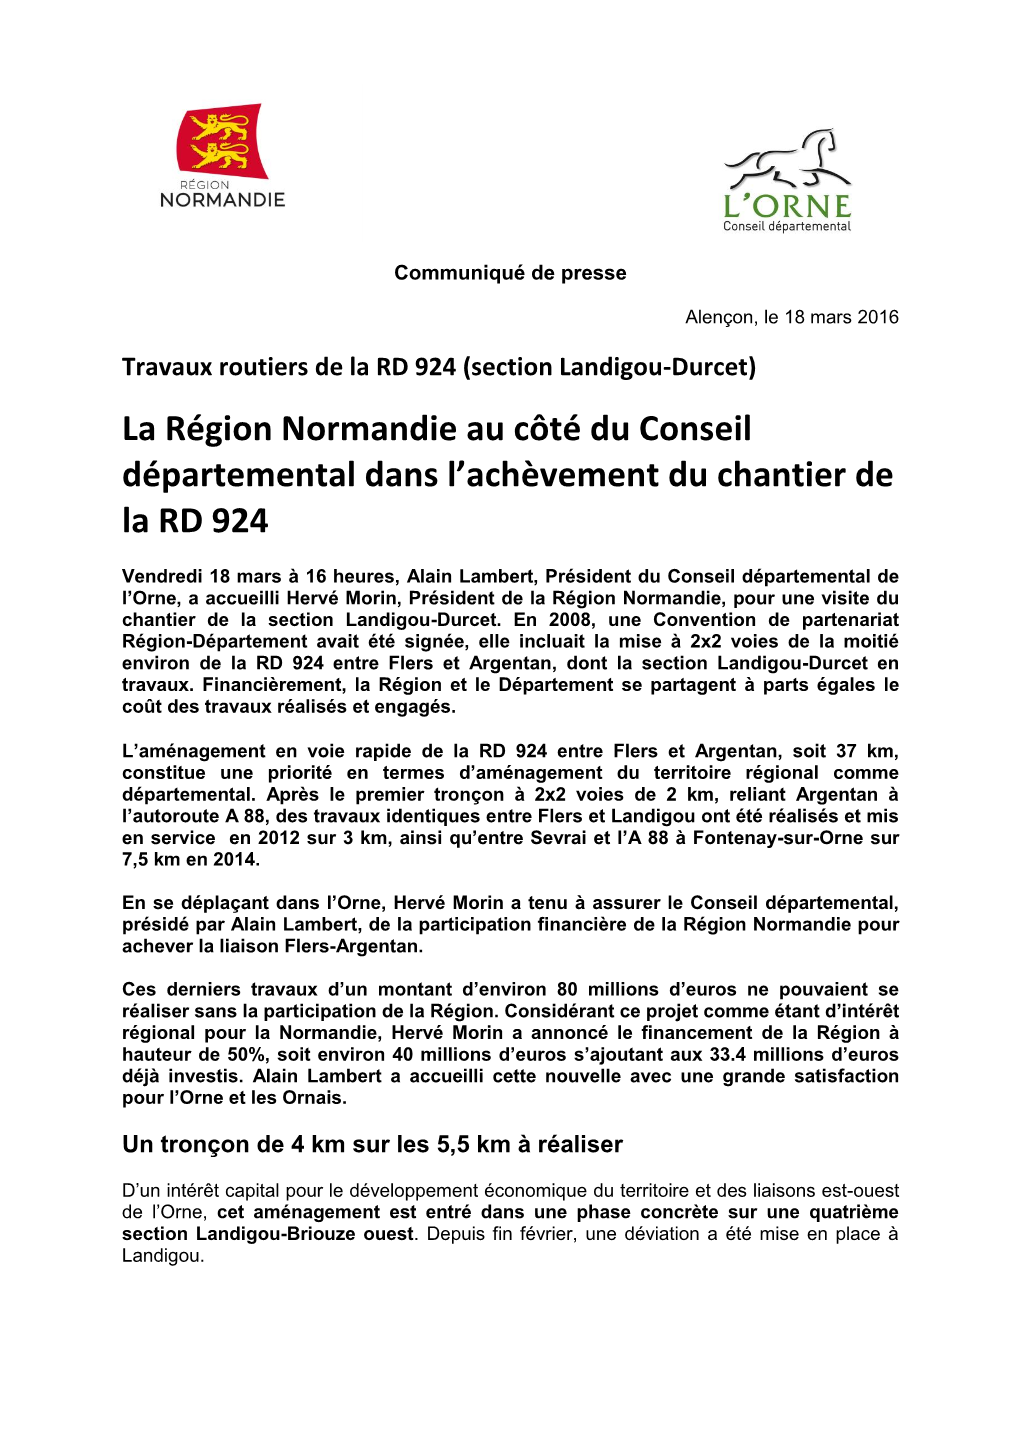 La Région Normandie Au Côté Du Conseil Départemental Dans L’Achèvement Du Chantier De La RD 924